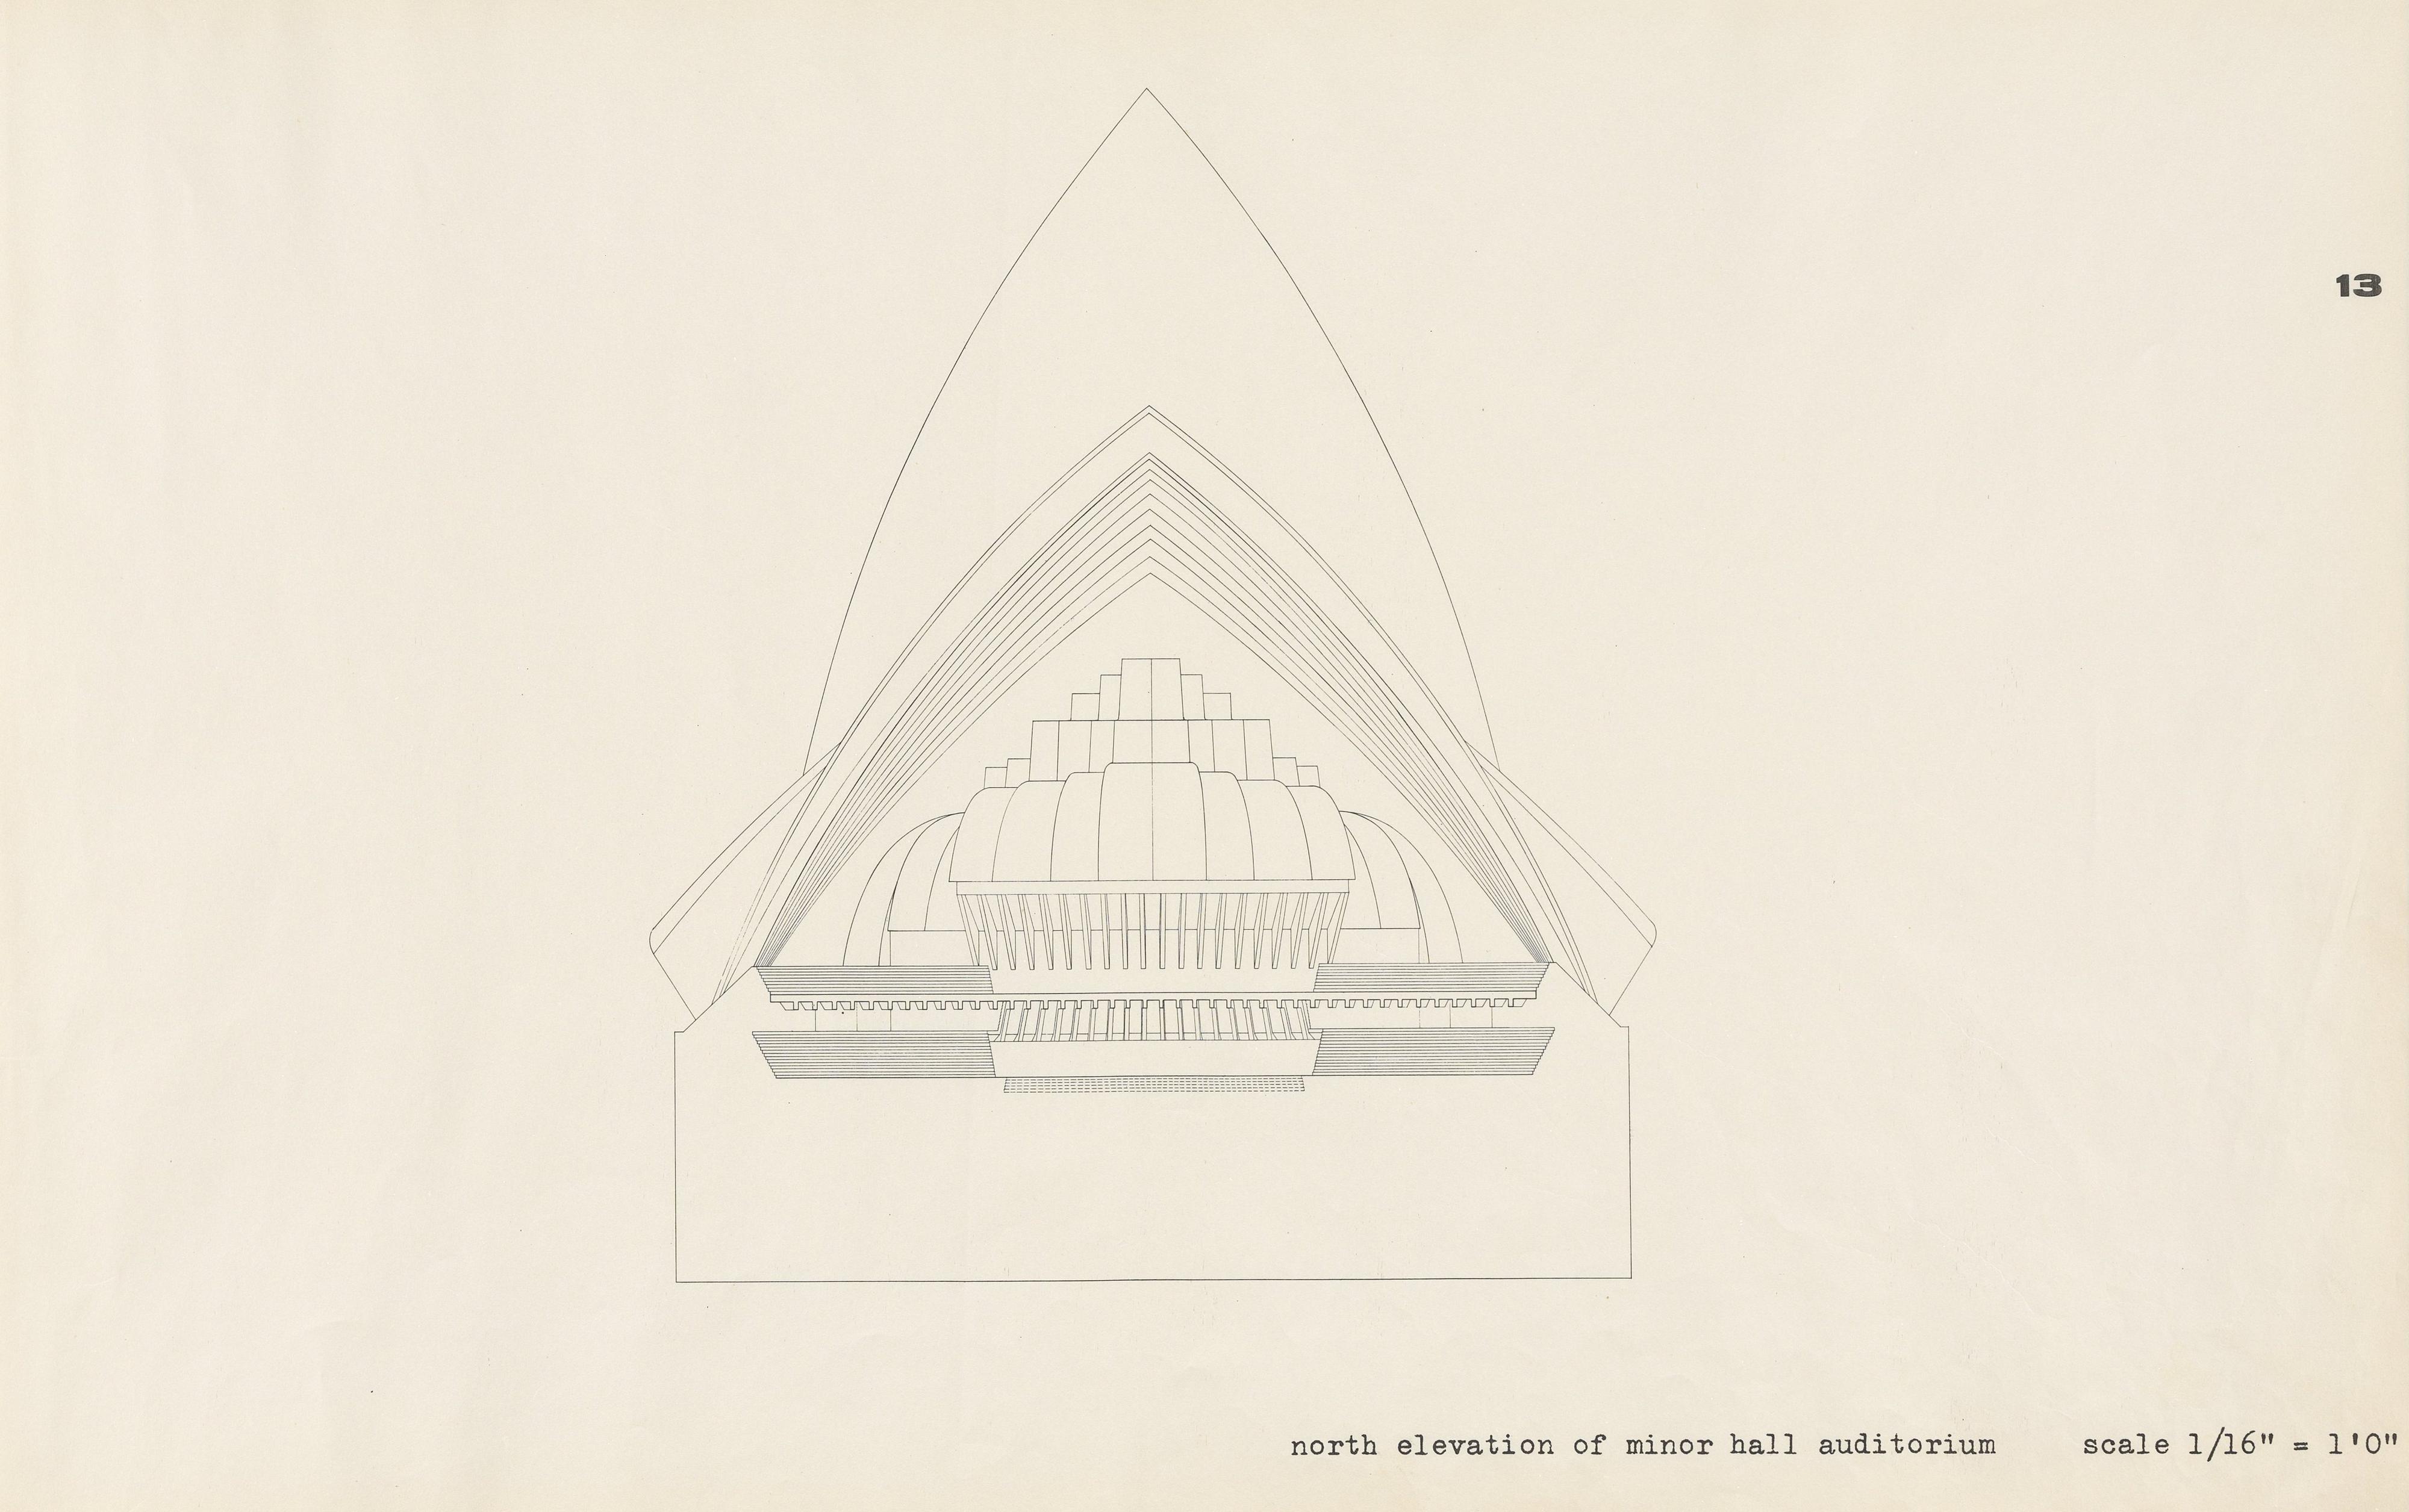 Sydney Opera House : [Yellow Book] / architect Jørn Utzon. — 1962. — 39 plans